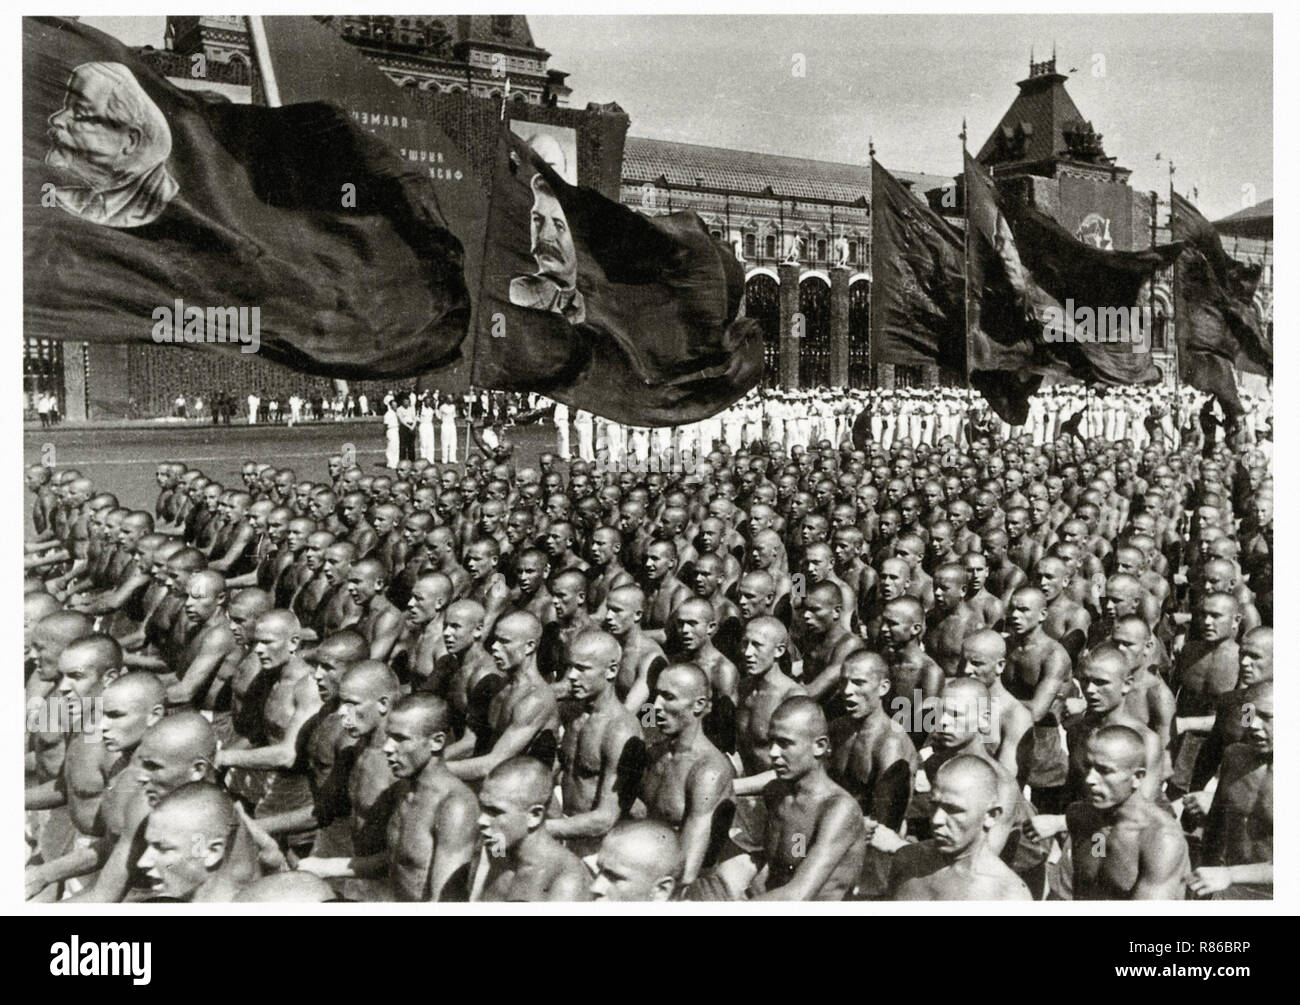 Défilé de la culture physique à la place Rouge 1930 - Affiche publicitaire ancienne Banque D'Images